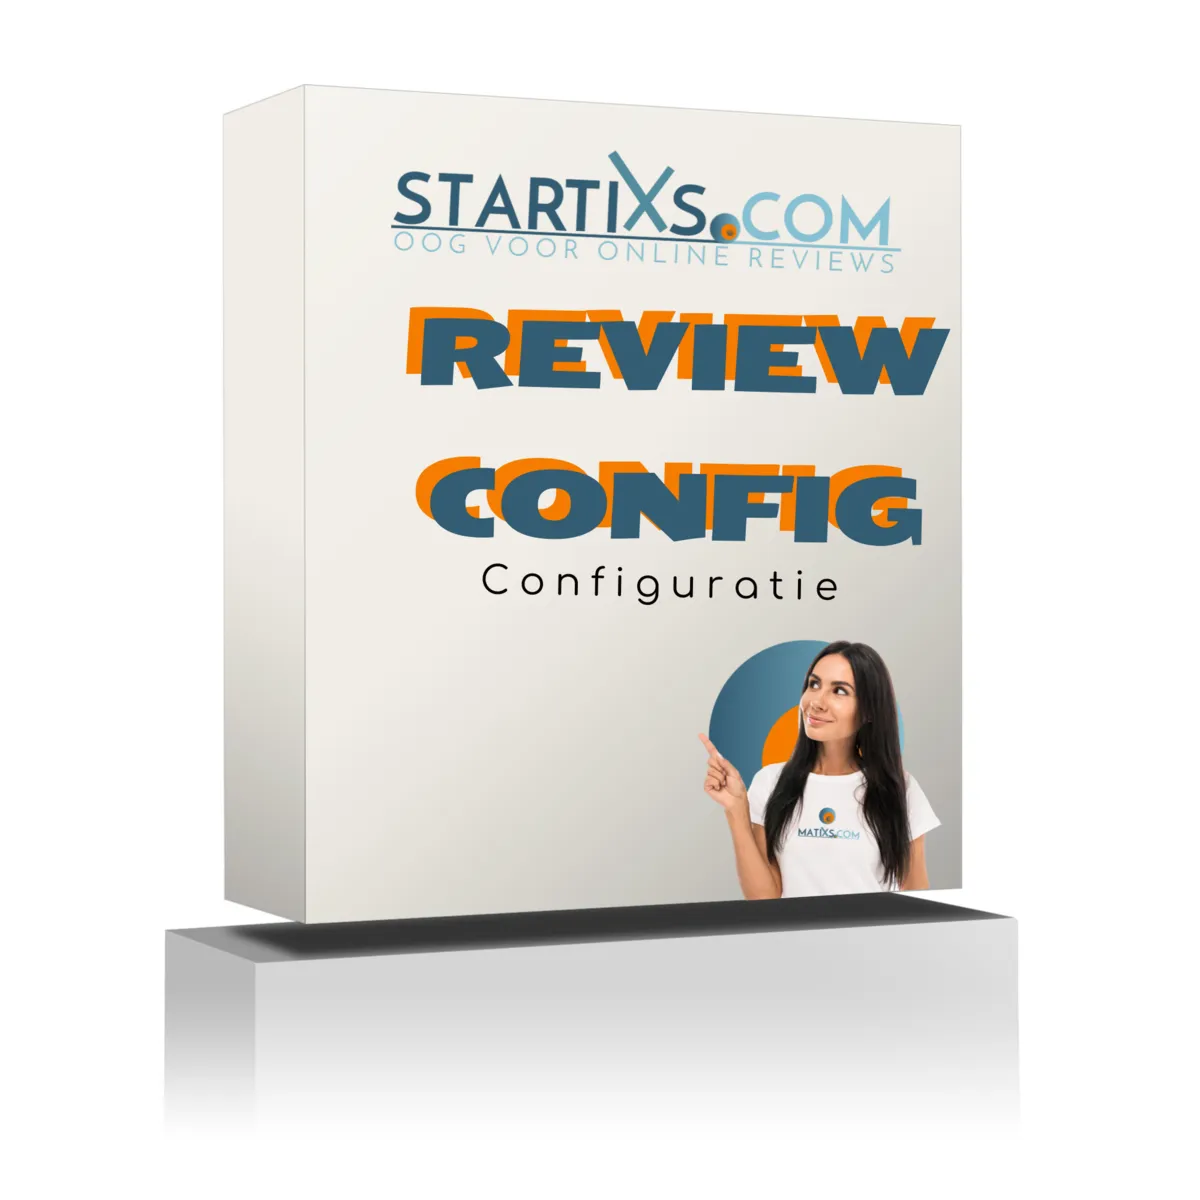 Startixs - Review Configuratie